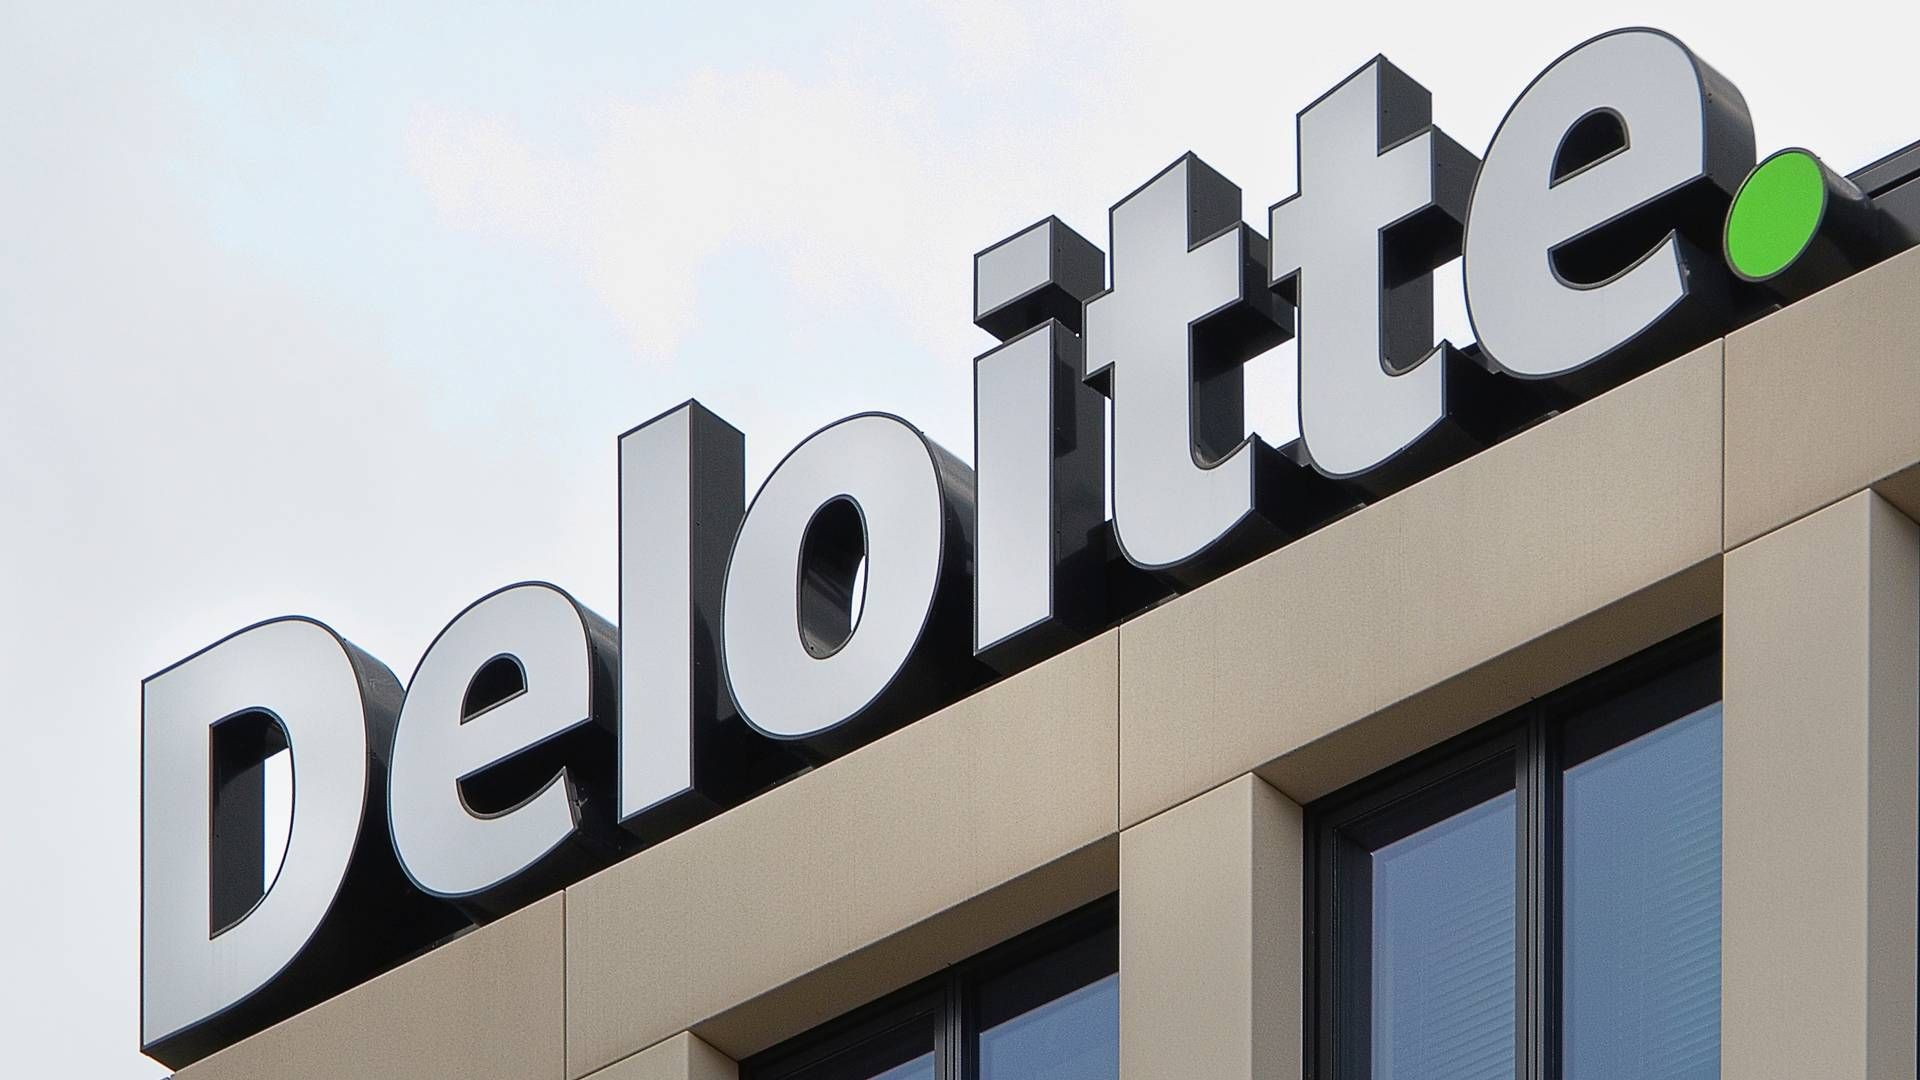 Den adm. direktør for Deloittes britiske forretning, Richard Houston, skulle ifølge Financial Times have annonceret målrettede omstruktureringer på tværs af firmaets virksomheder. | Foto: Malina Petr/AP/Ritzau Scanpix